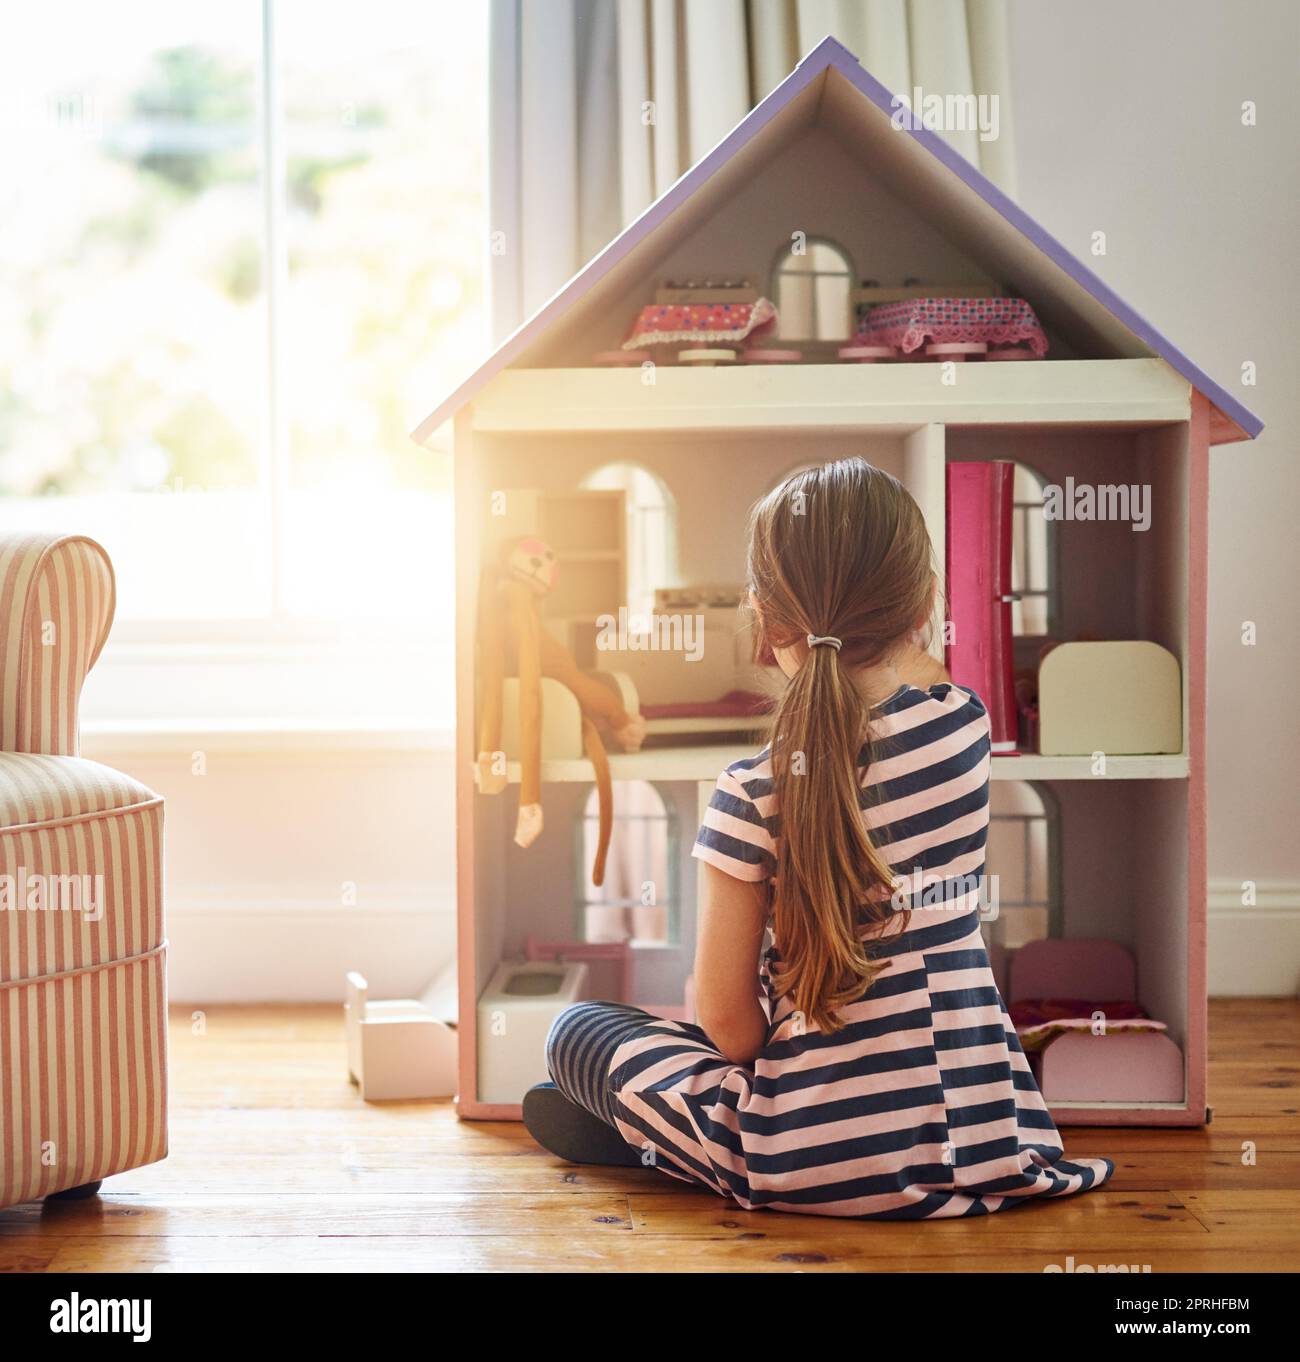 Ihren Puppen einen Platz zum Zuhause geben. Ein kleines Mädchen, das zu Hause mit einem Puppenhaus spielt. Stockfoto